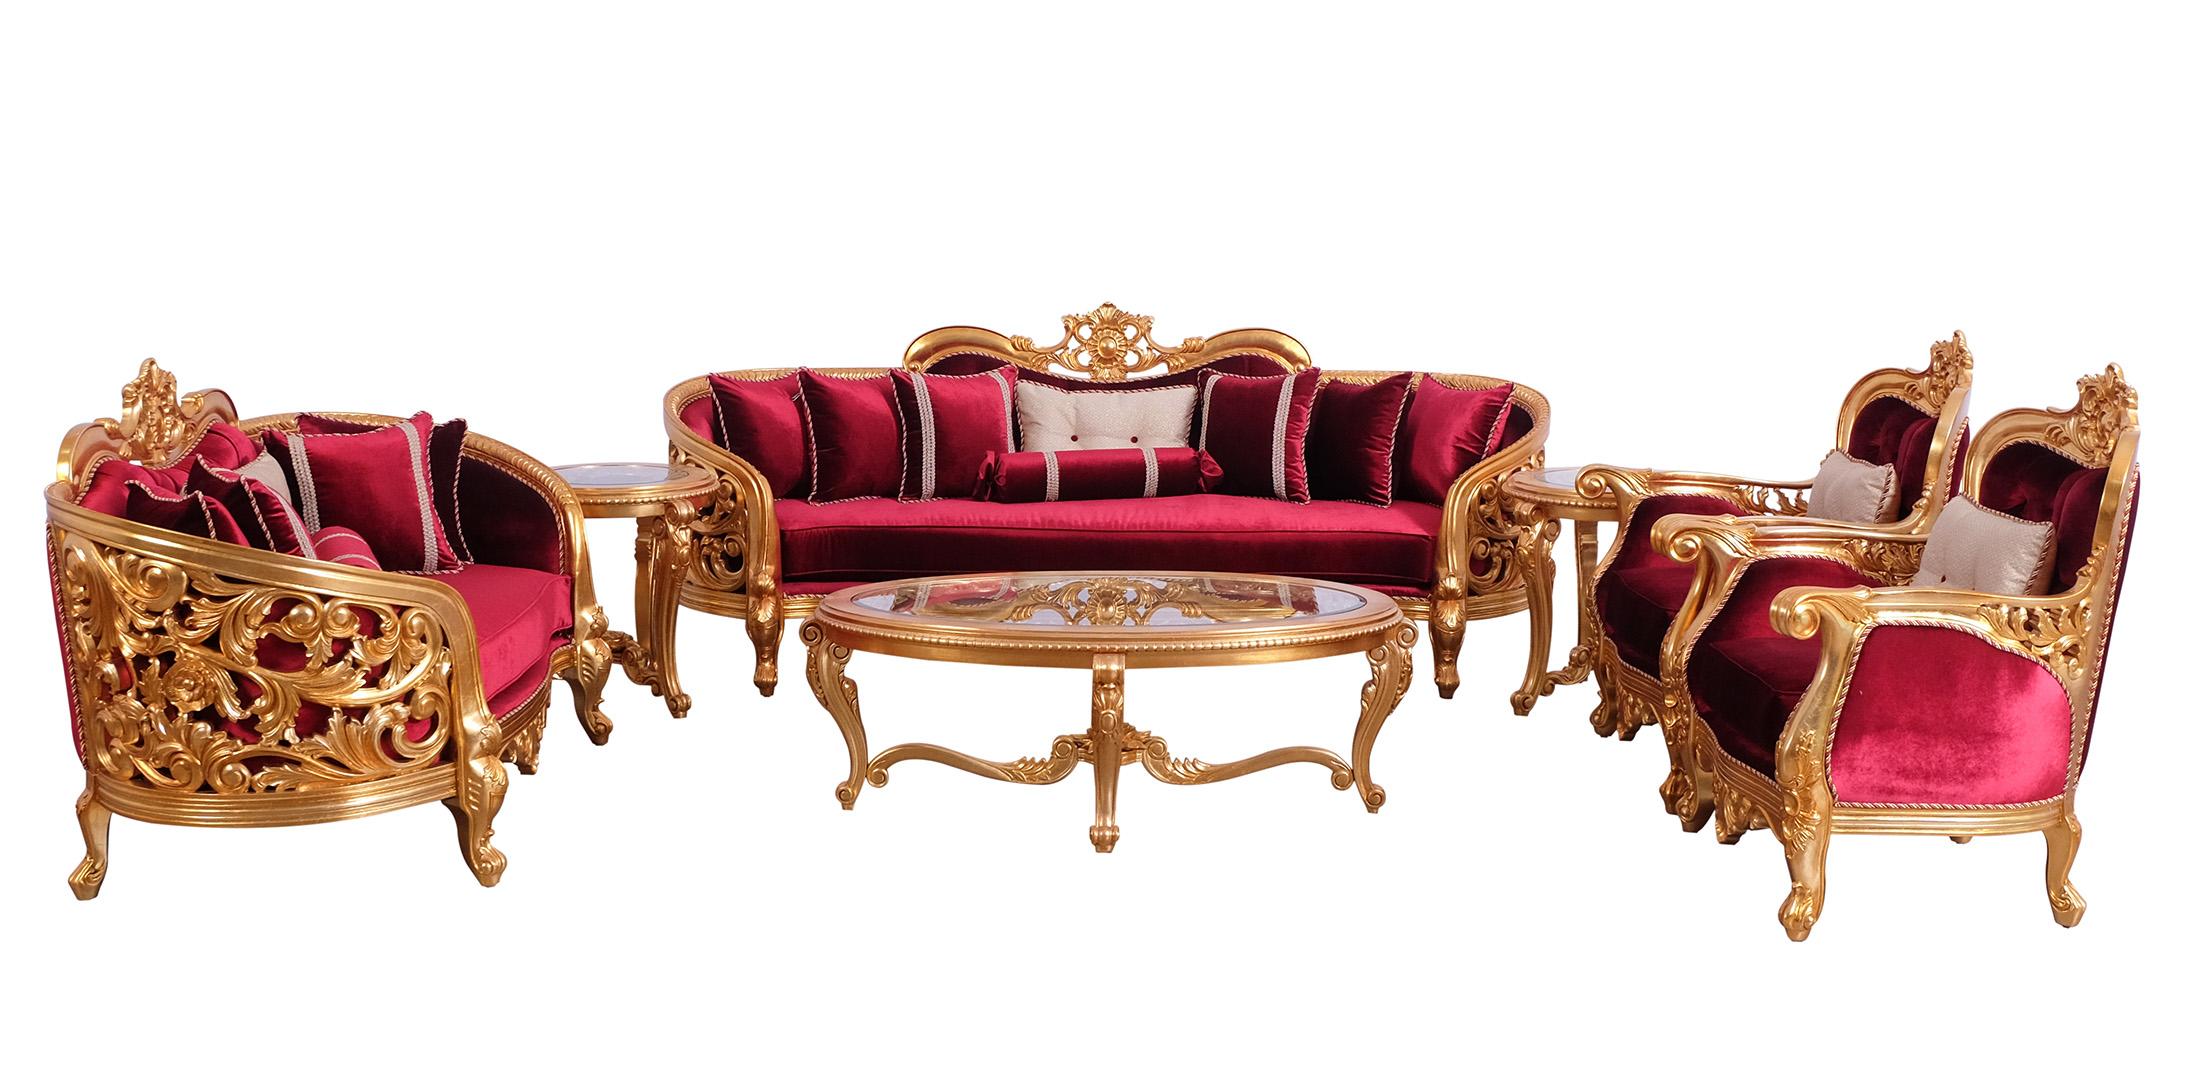 Classic, Traditional Sofa Set BELLAGIO 30015-S-Set-6 in Antique, Gold, Burgundy Velvet